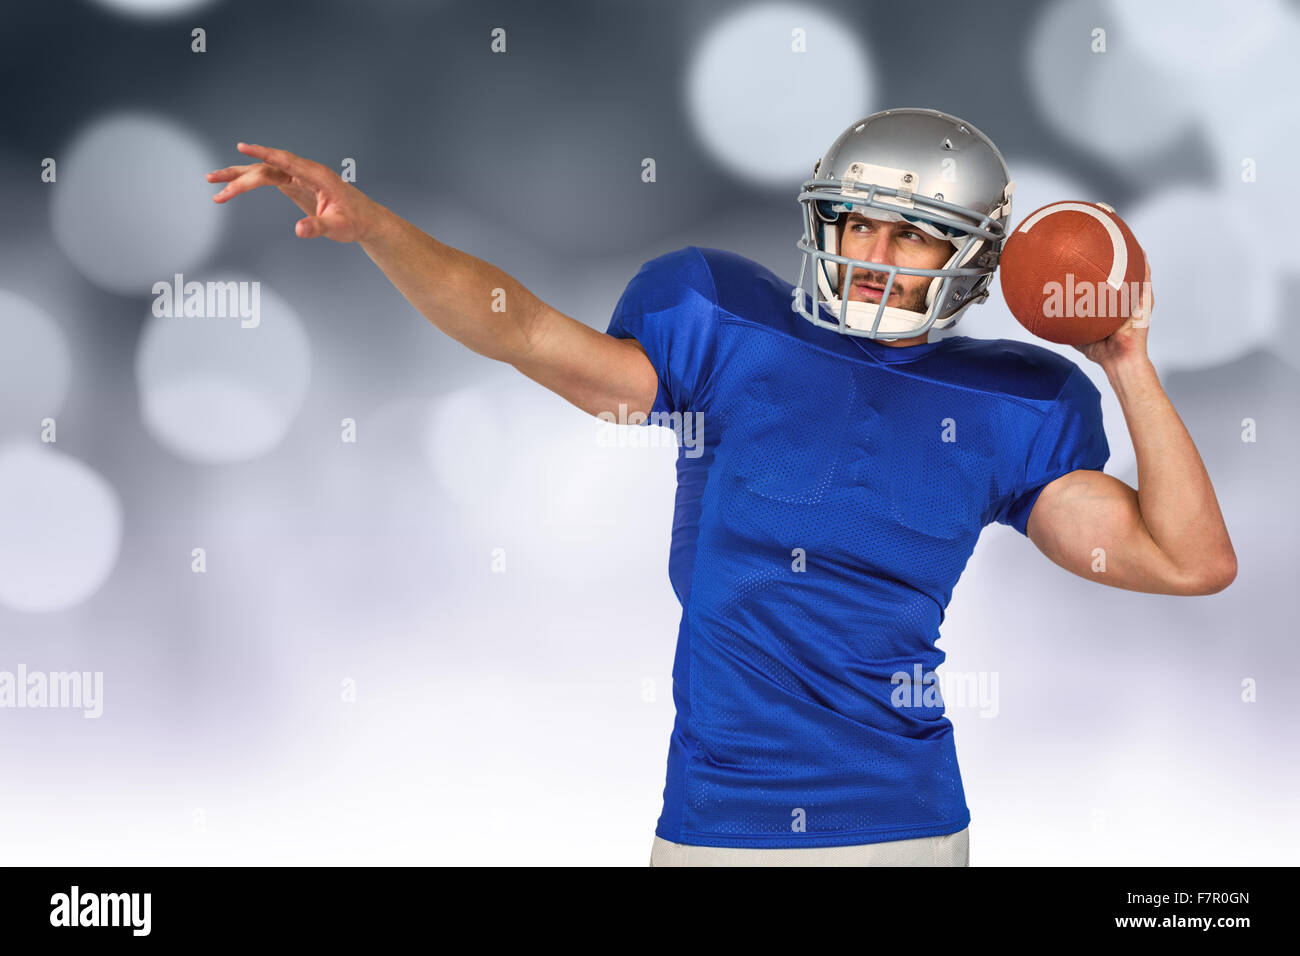 Immagine composita del giocatore di football americano che sta per lanciare la palla Foto Stock